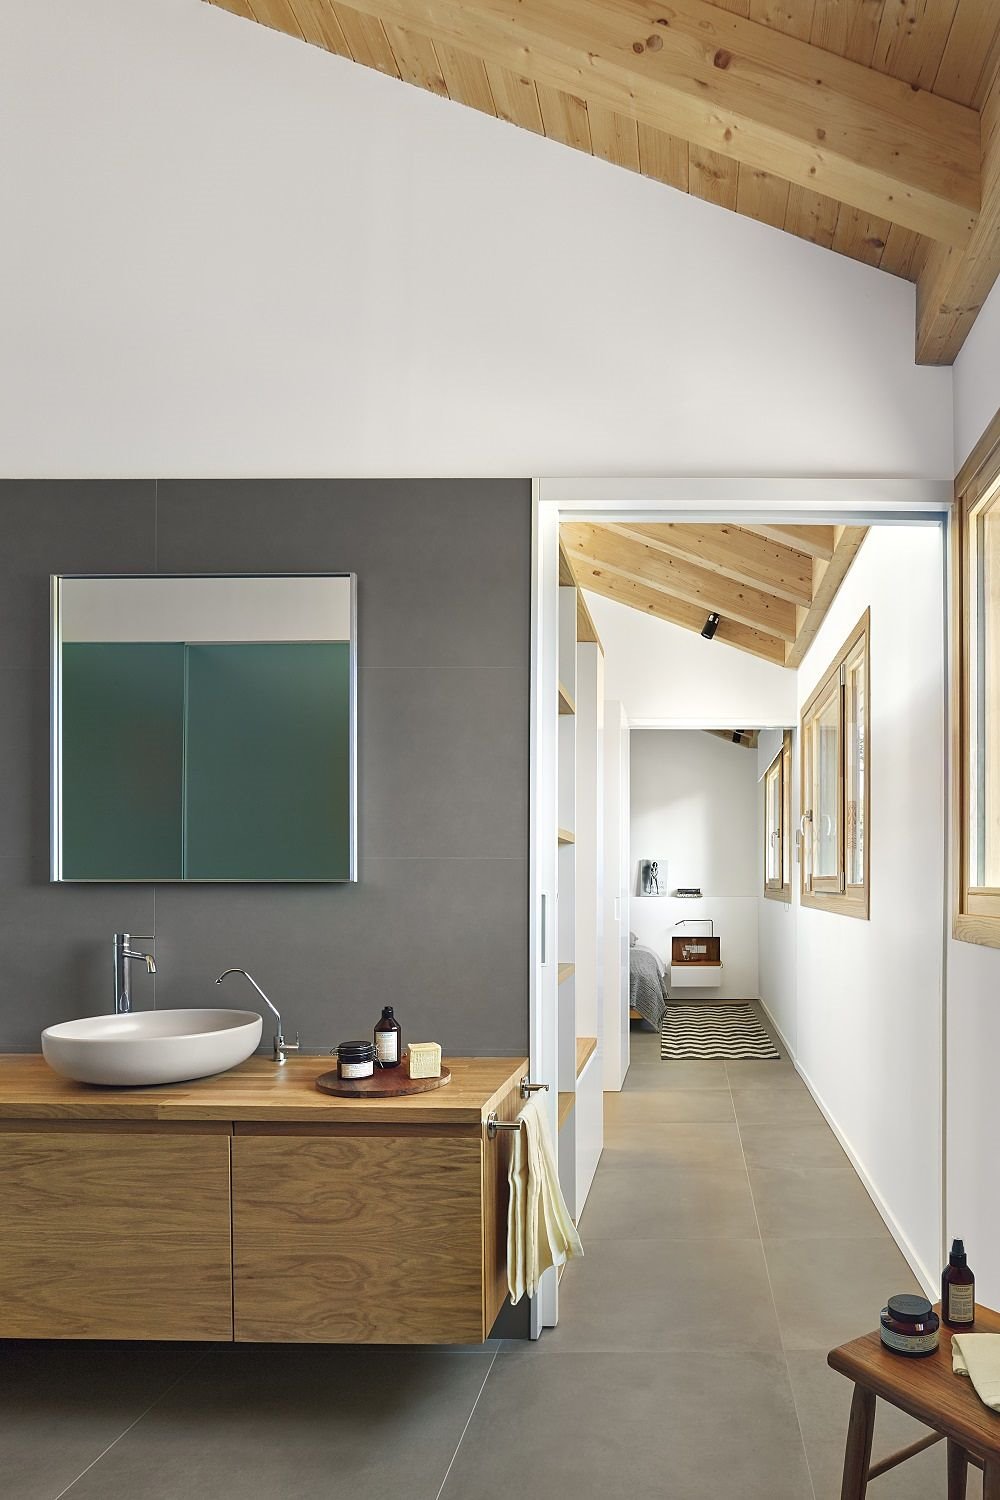 Lavabos exentos y armario bajo lavabo suspendido es una combinación armoniosa y equilibrada con muy buen resultado.